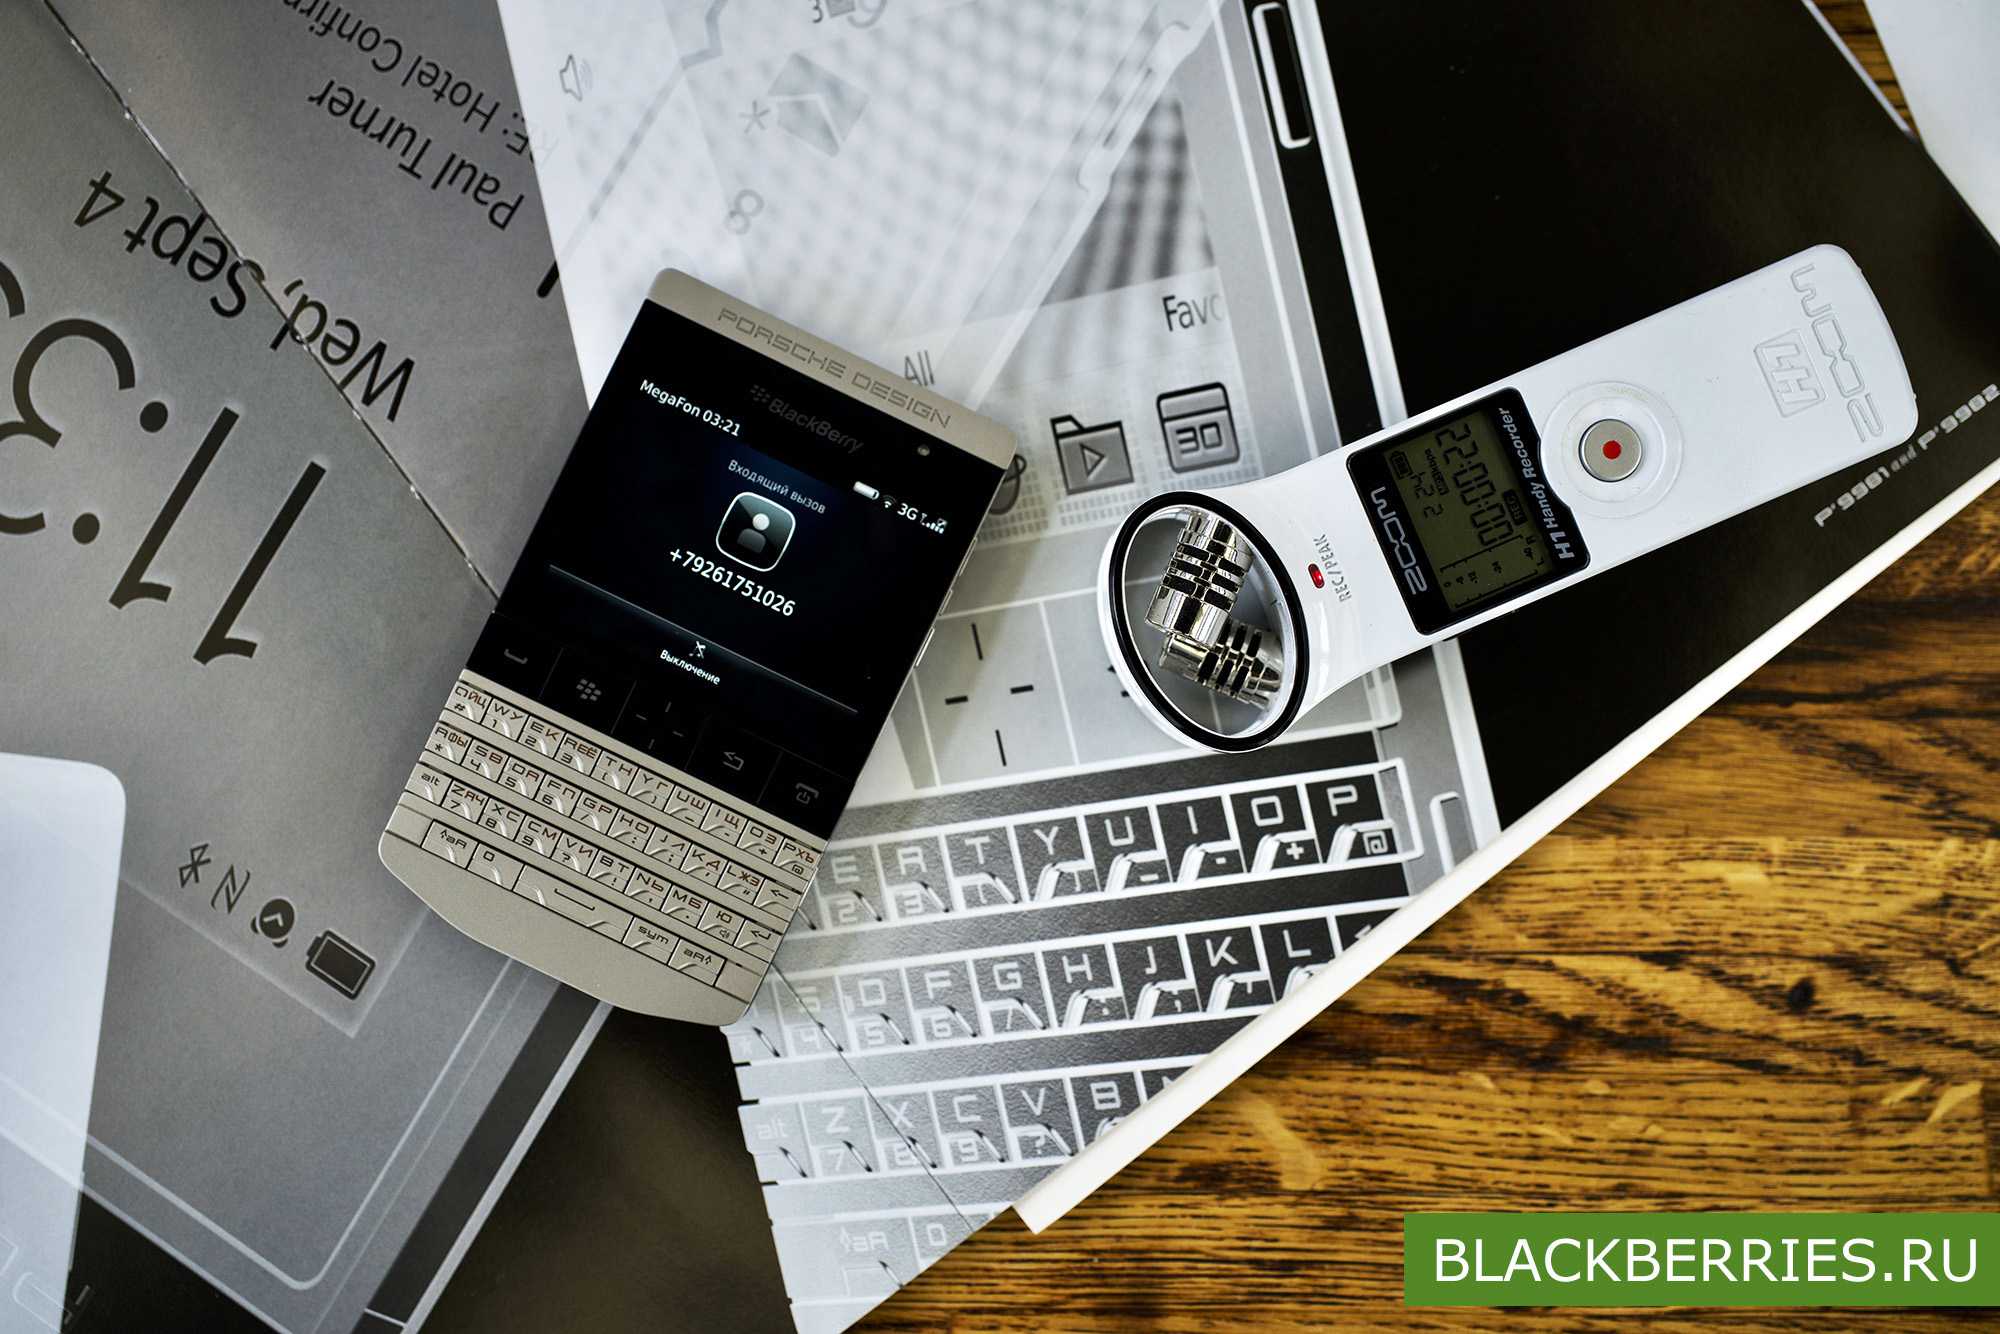 Мобильный телефон BlackBerry London - подробные характеристики обзоры видео фото Цены в интернет-магазинах где можно купить мобильный телефон BlackBerry London